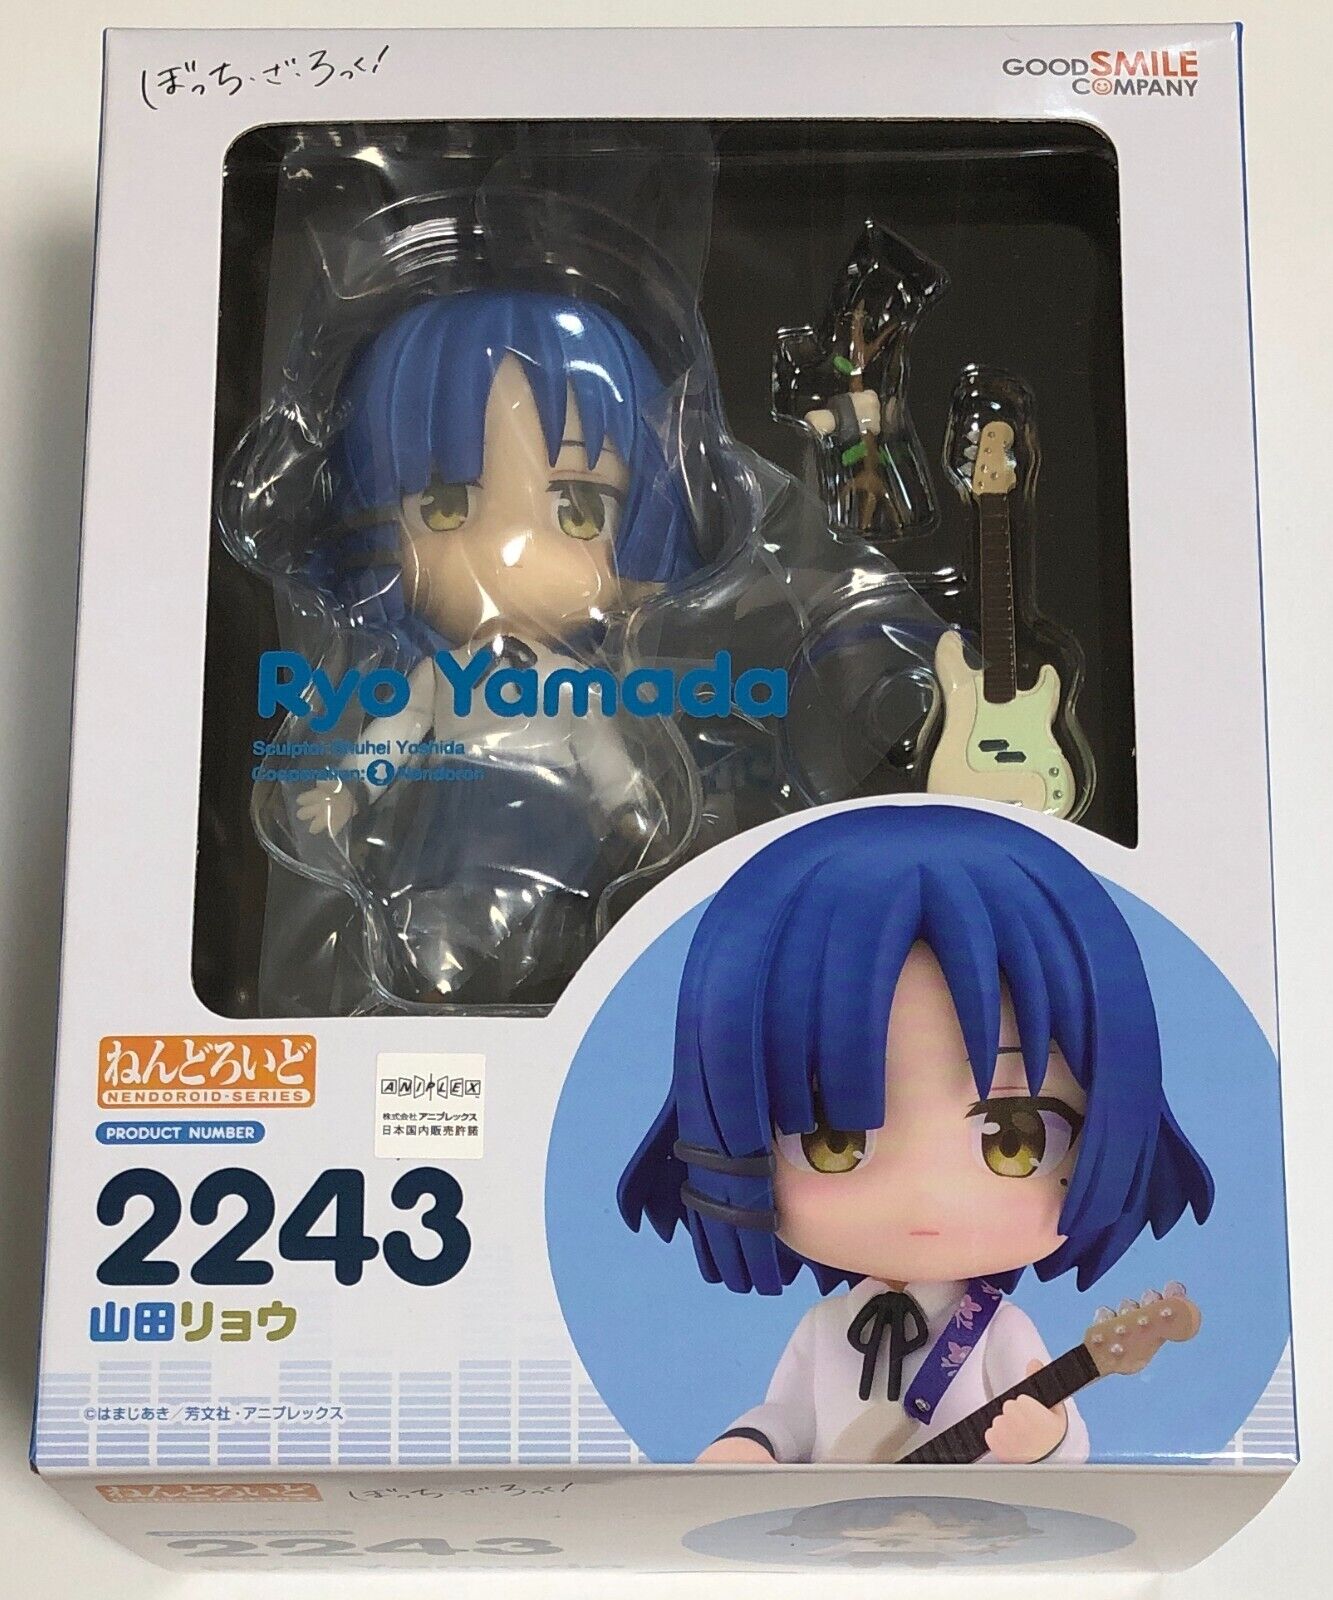 [NEW] Nendoroid Ryo Yamada Bocchi the Rock Product Number 2243